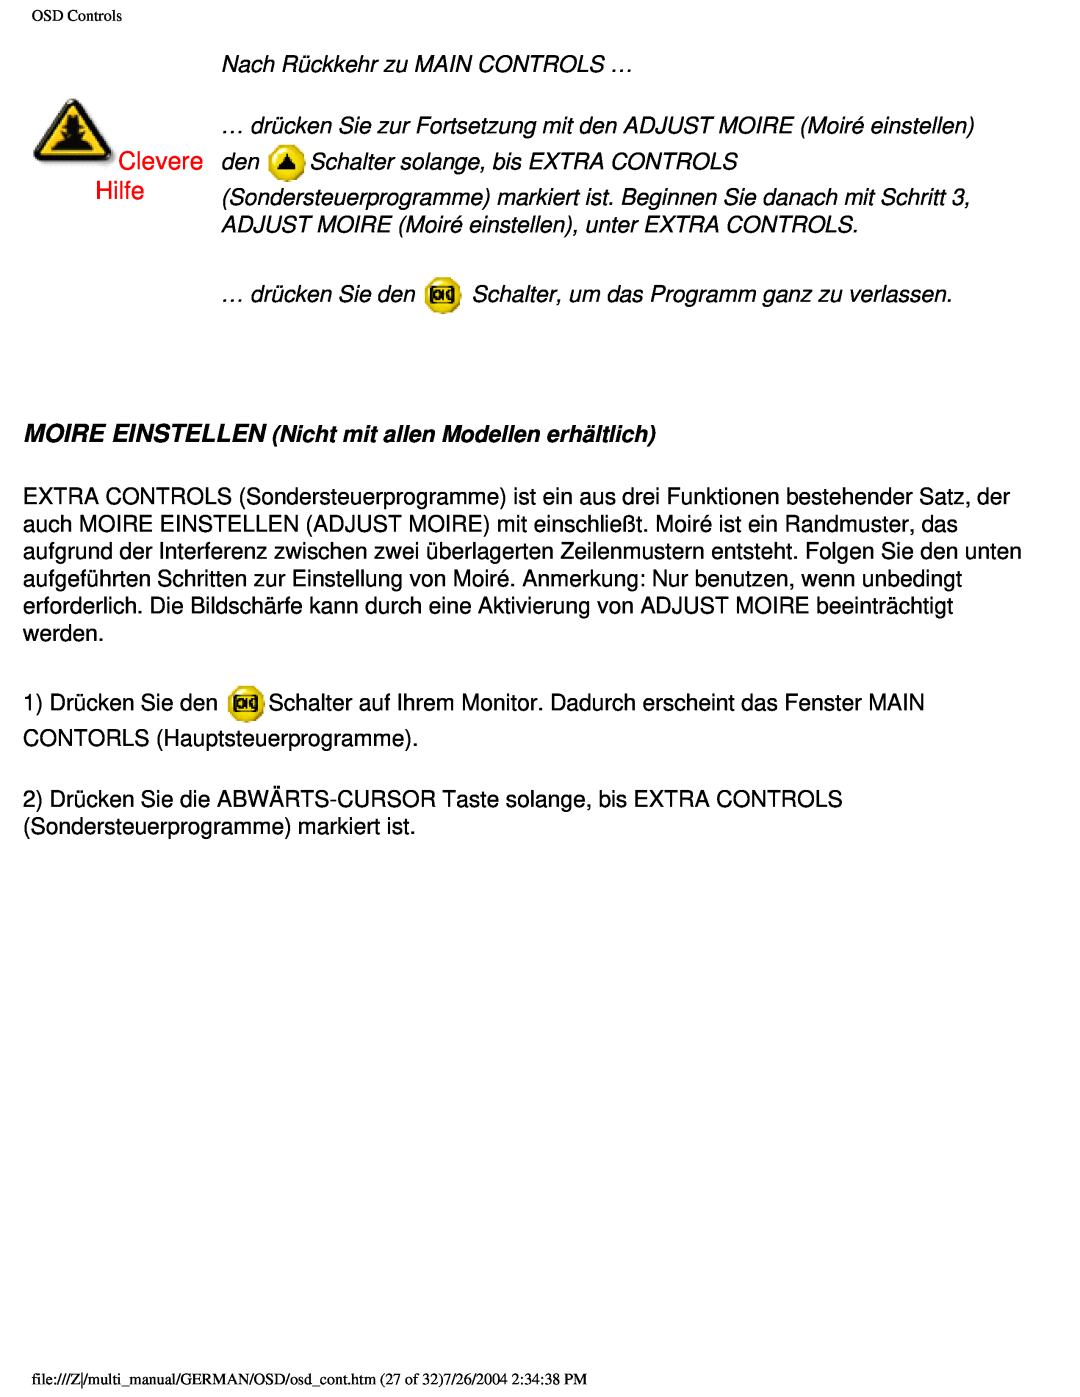 Philips 107X2 Clevere Hilfe, Nach Rückkehr zu MAIN CONTROLS …, MOIRE EINSTELLEN Nicht mit allen Modellen erhältlich 